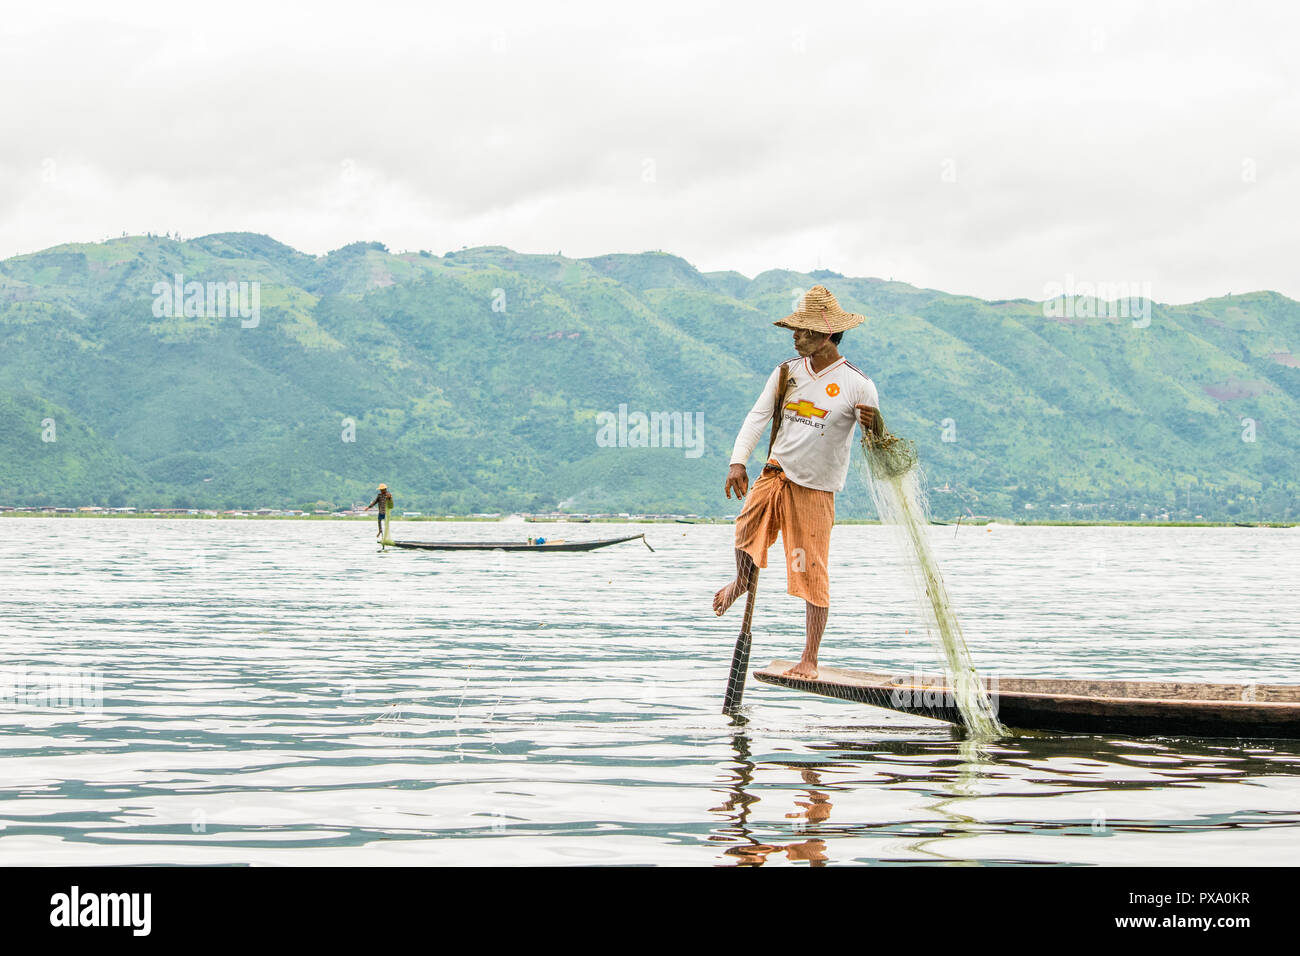 Reisen: Lokale junge Burmesische fischer Tragen von Manchester United Shirt, Lastausgleich und Lenkung Boot mit seinem Fuß in Inle See, Burma, Myanmar, Asien Stockfoto